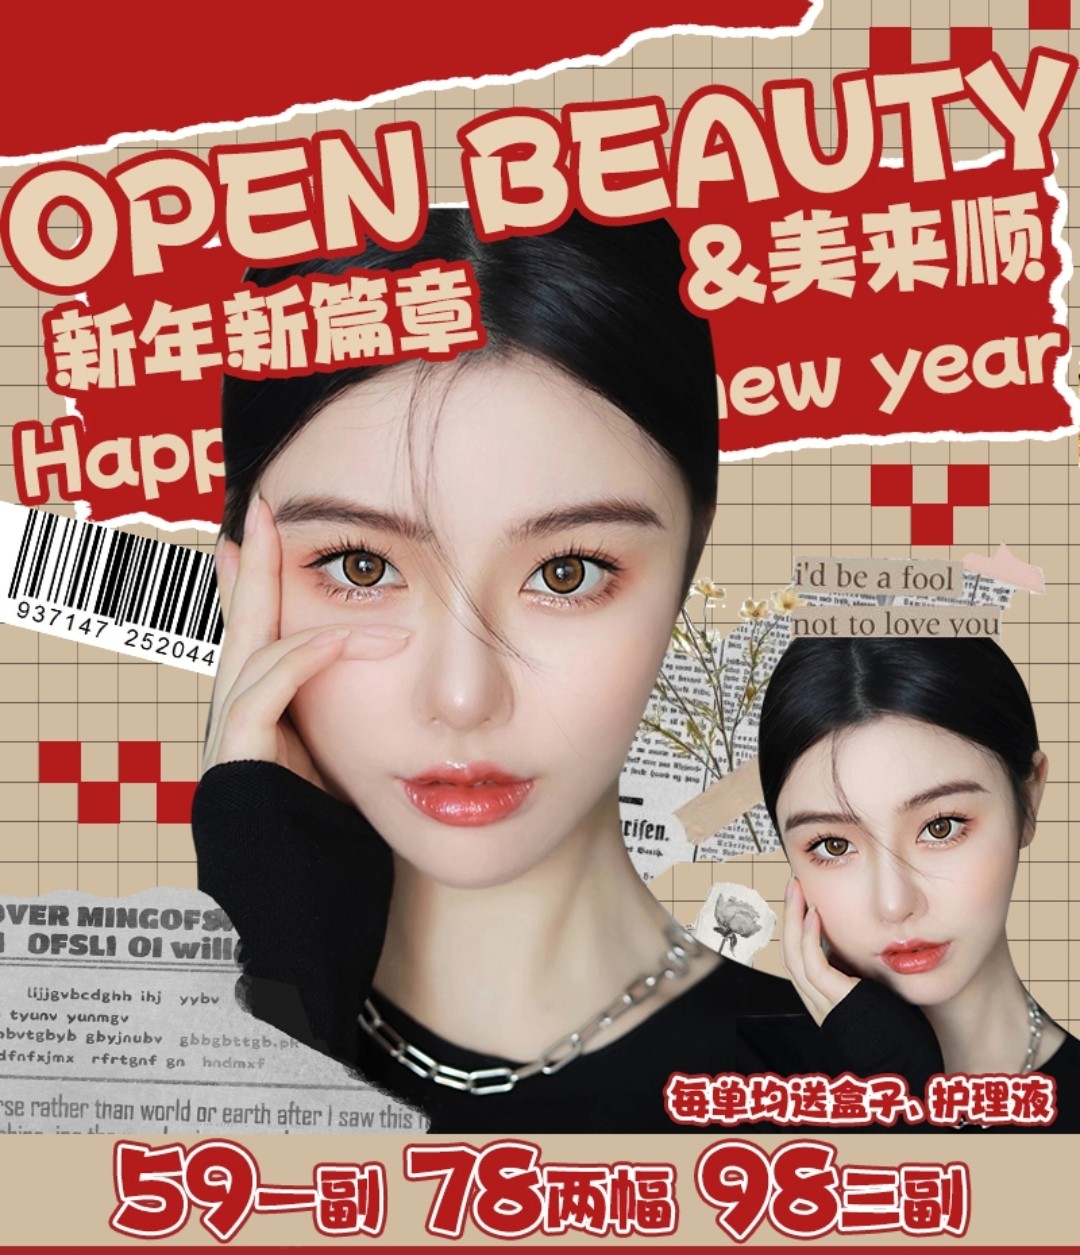 【半年抛】Openbeauty·美来顺 联名活动 新年换新 美貌新高度